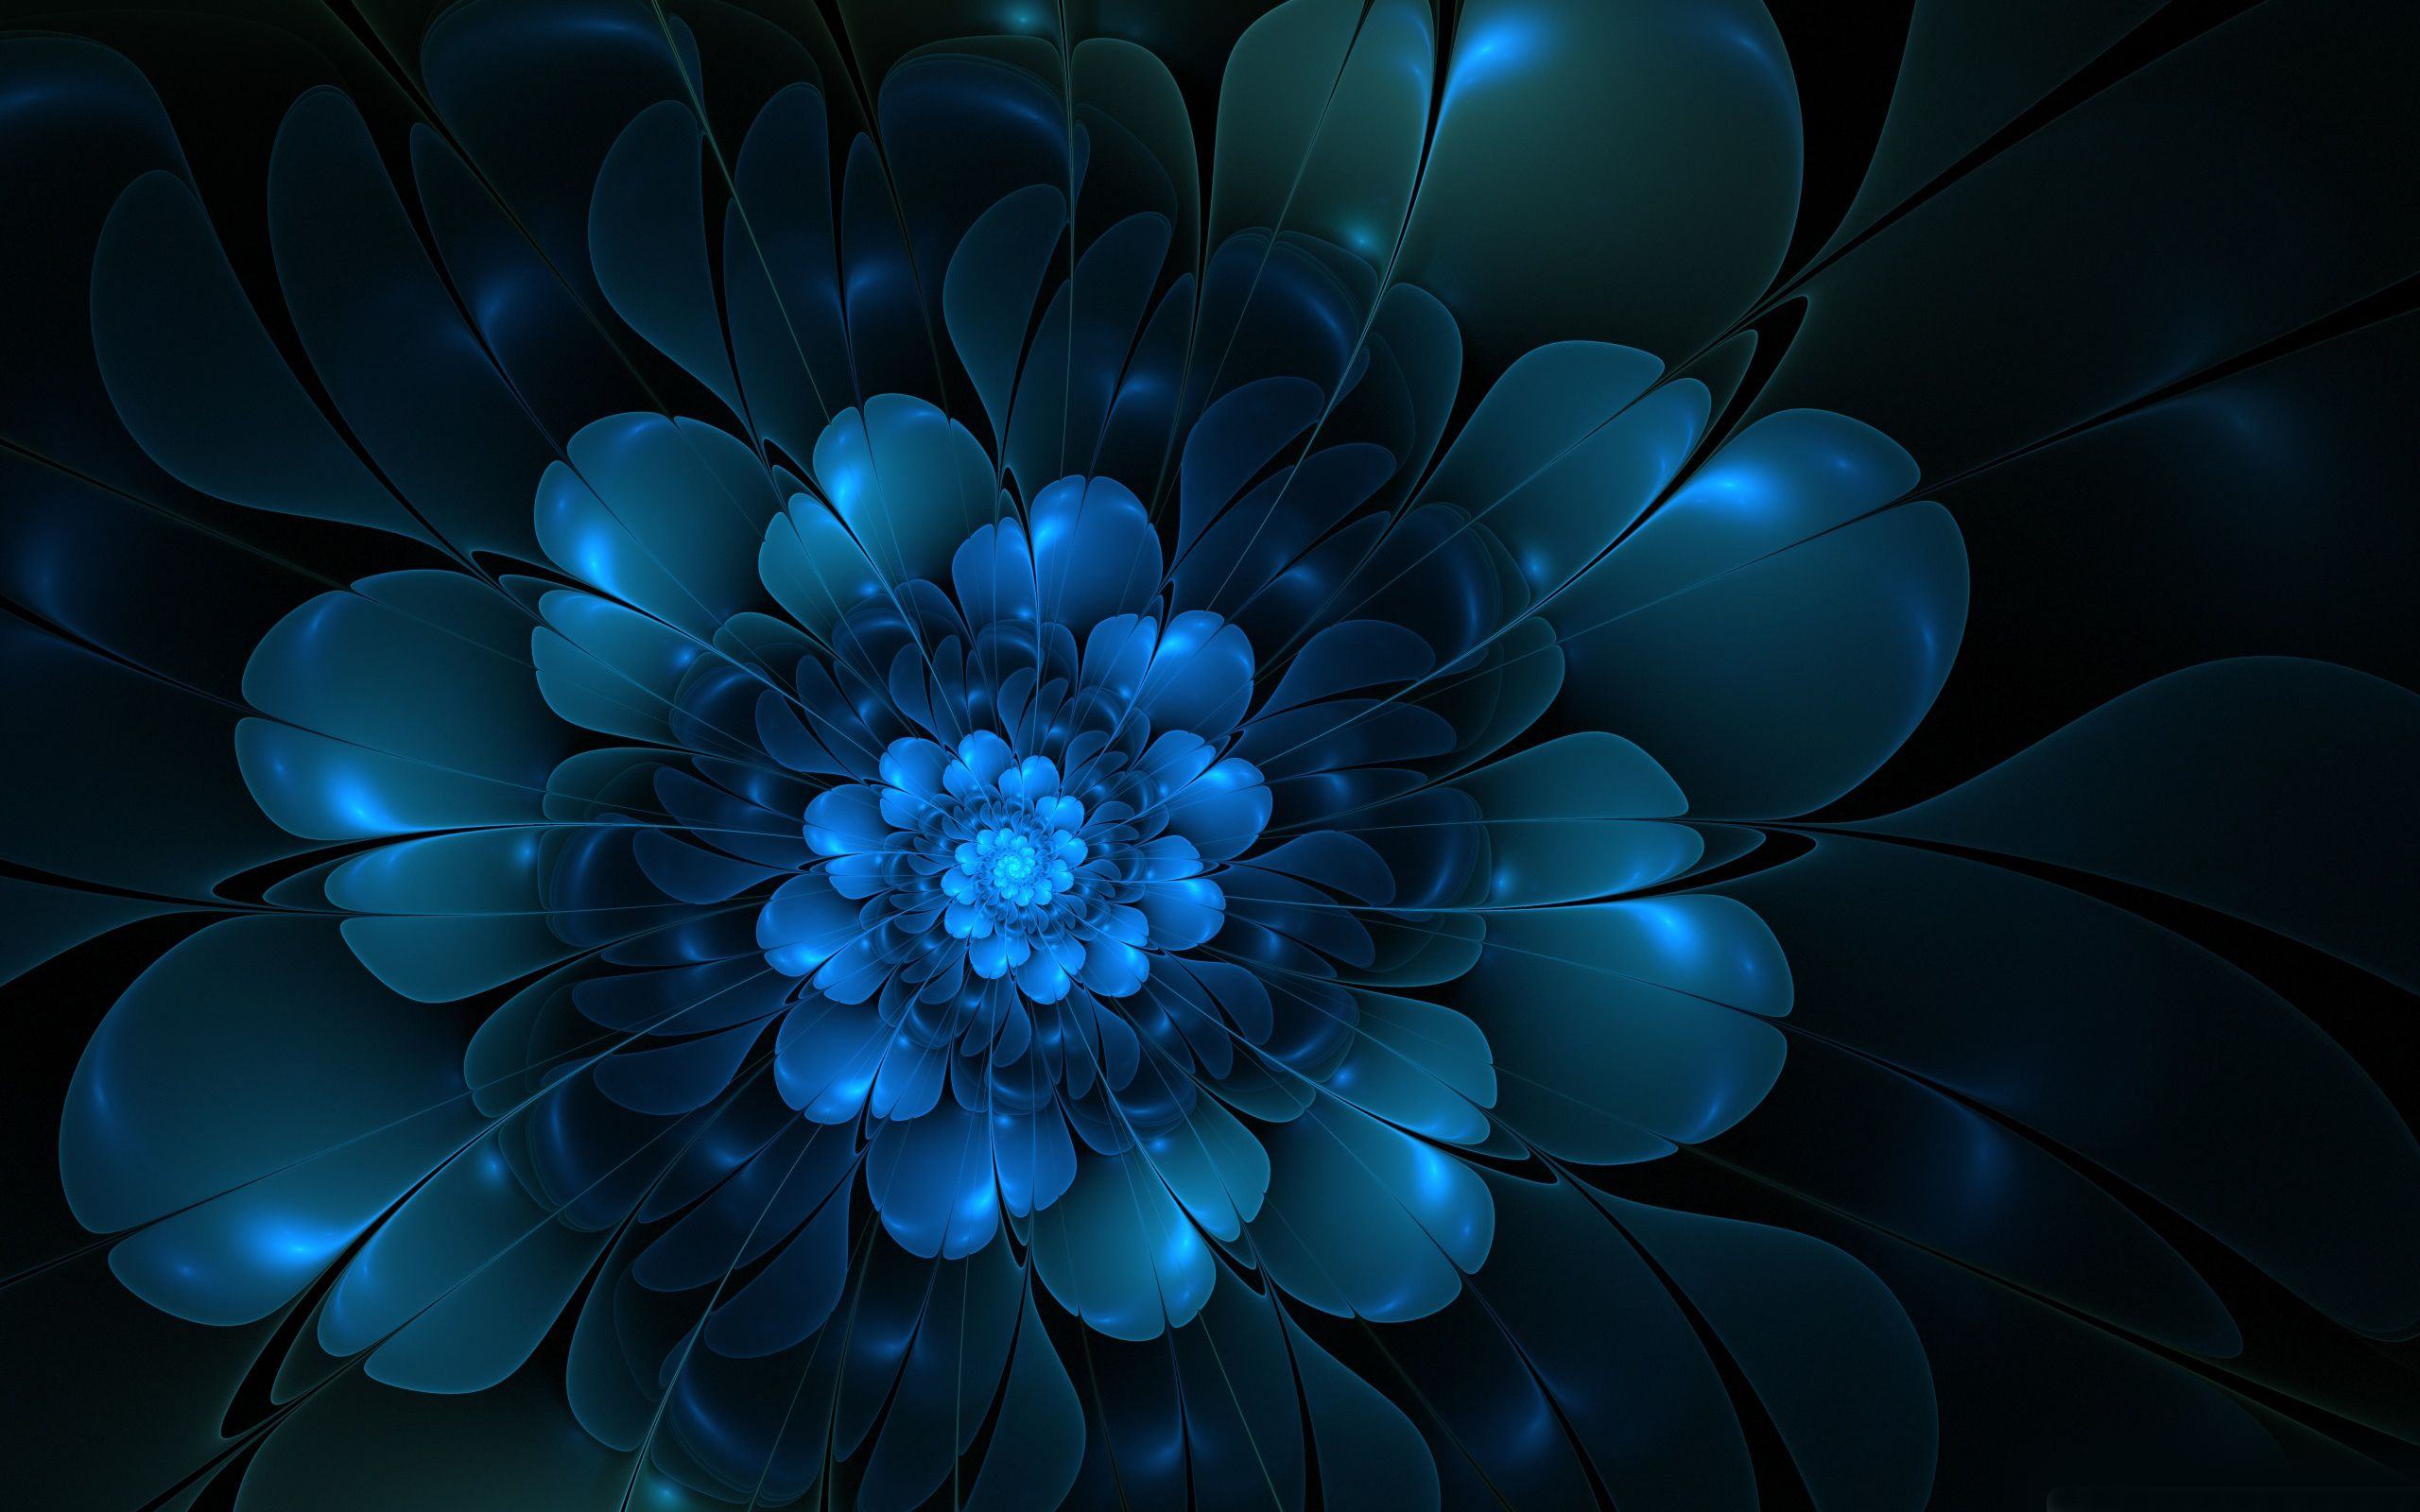 descarga de fondo de pantalla azul hd,azul,arte fractal,azul cobalto,azul eléctrico,pétalo